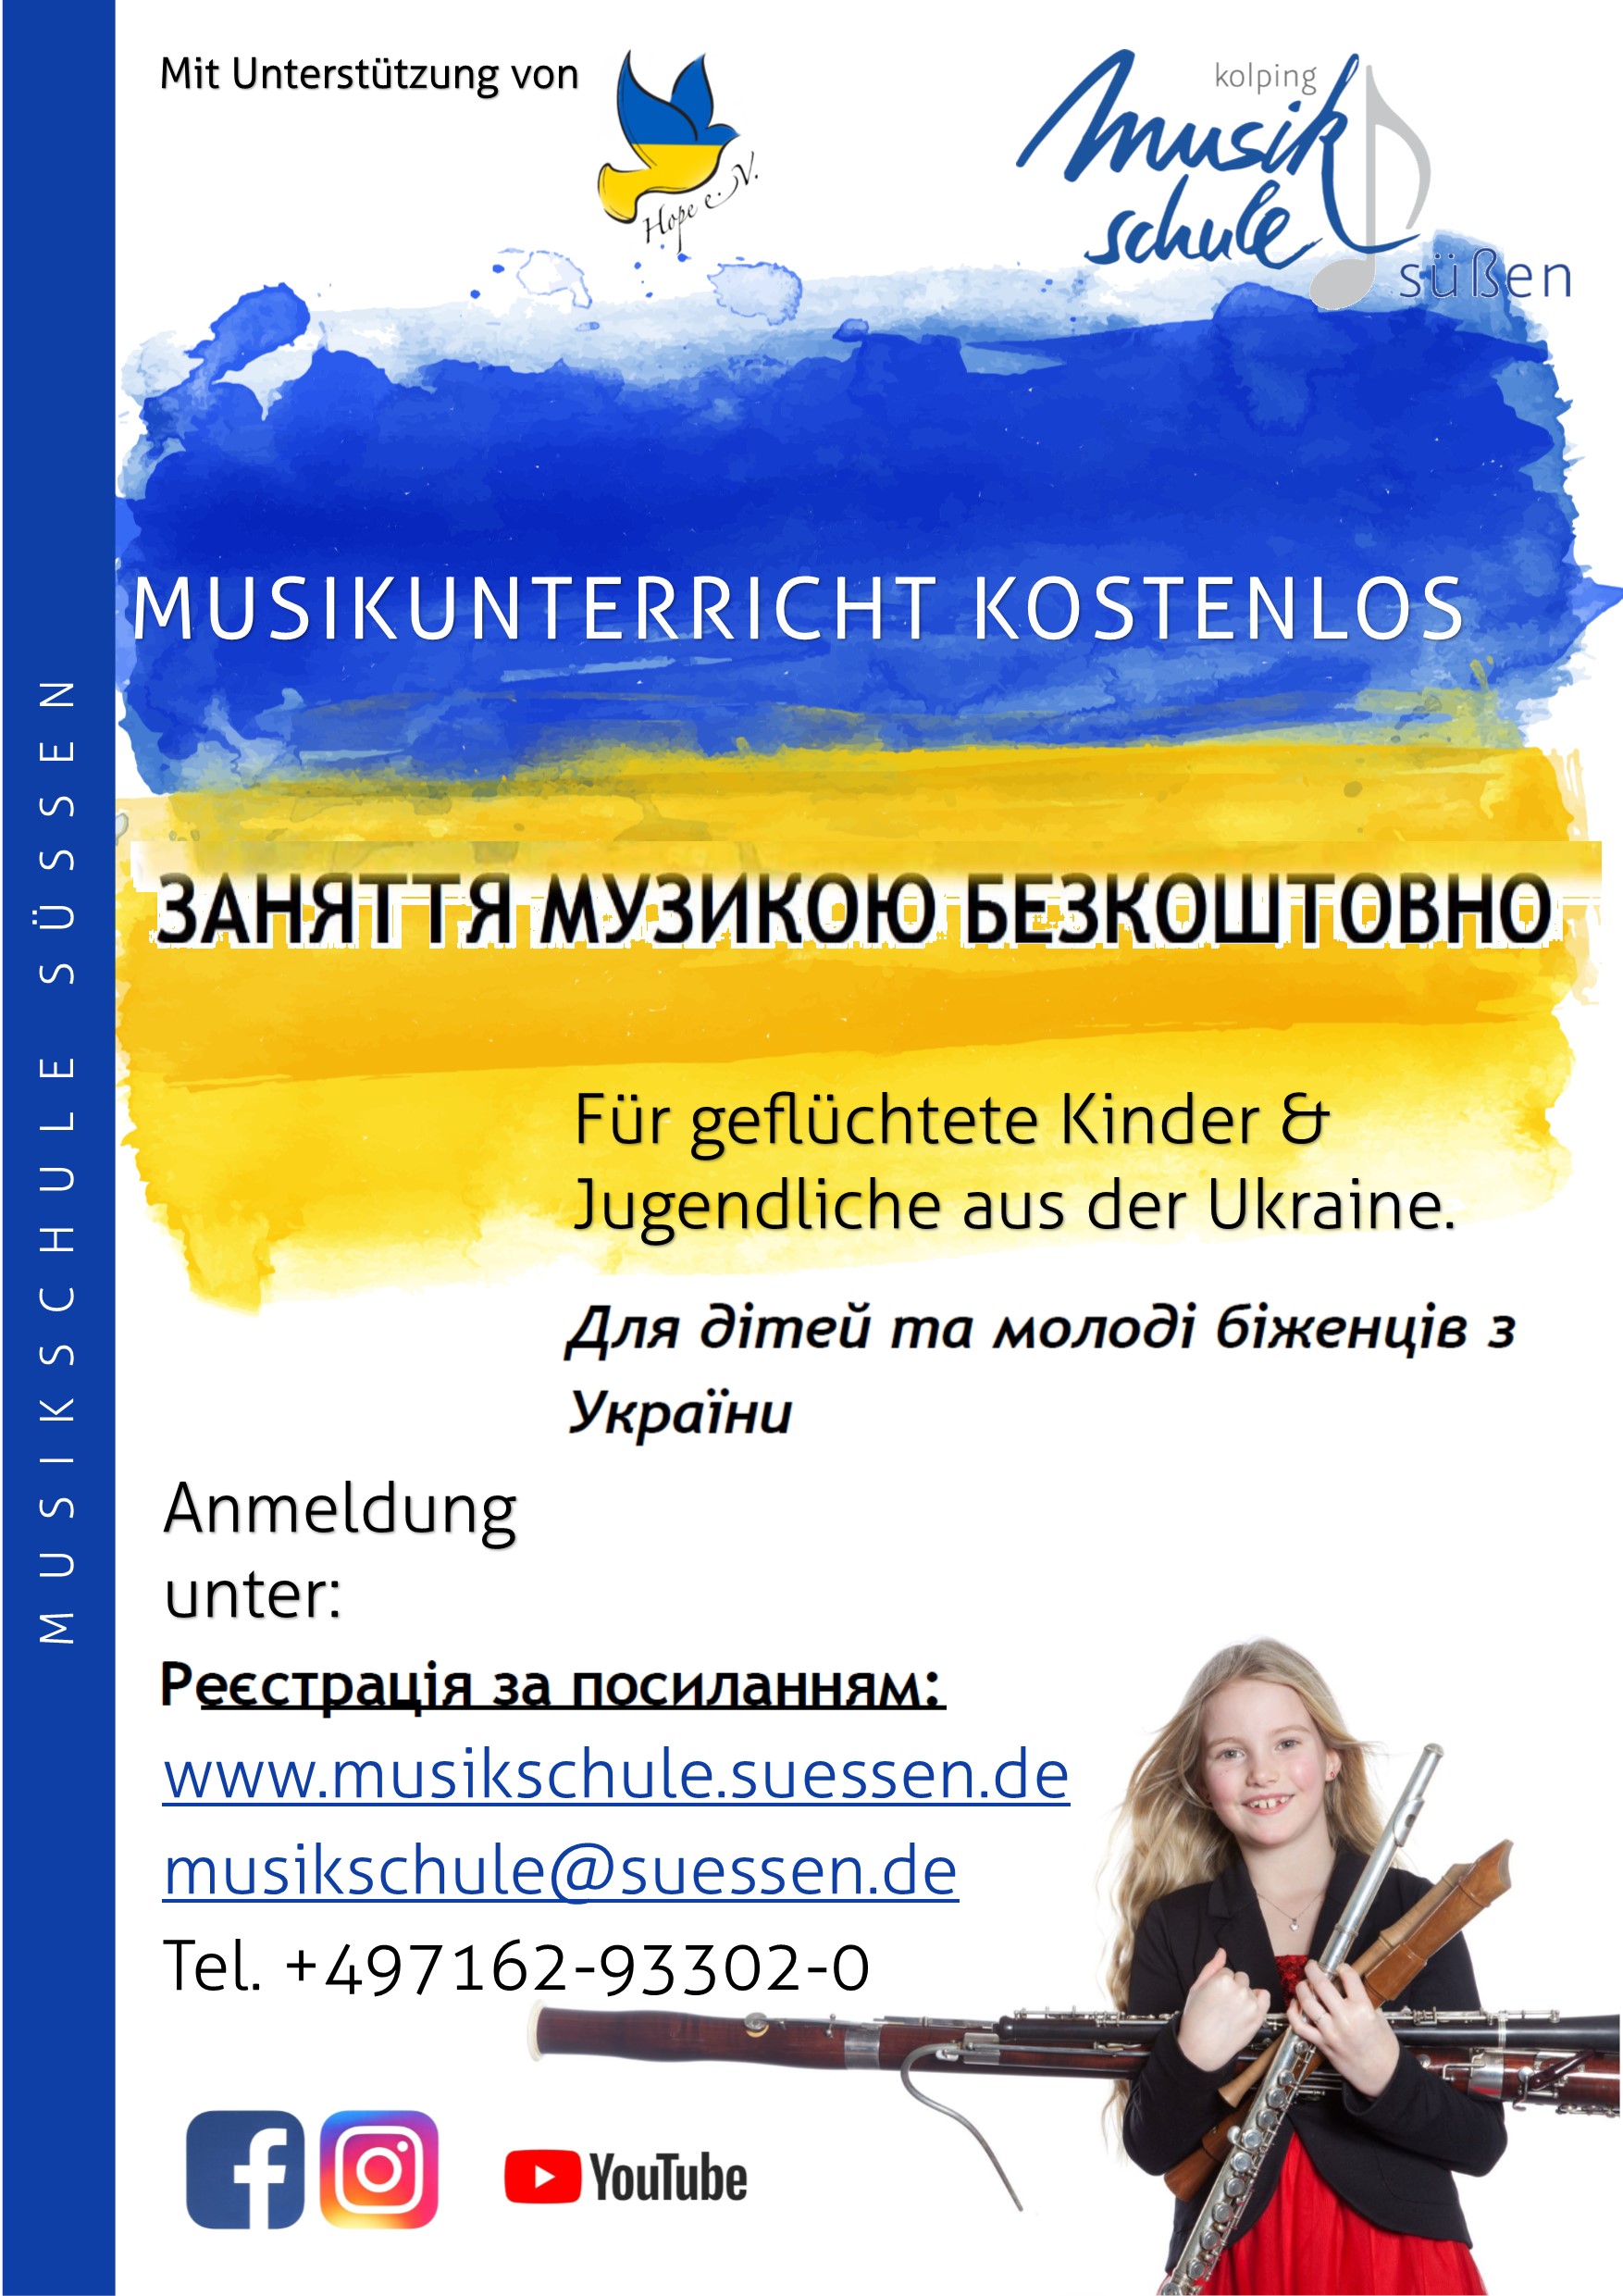  Musikunterricht kostenlos - Hilfe für die Ukraine 